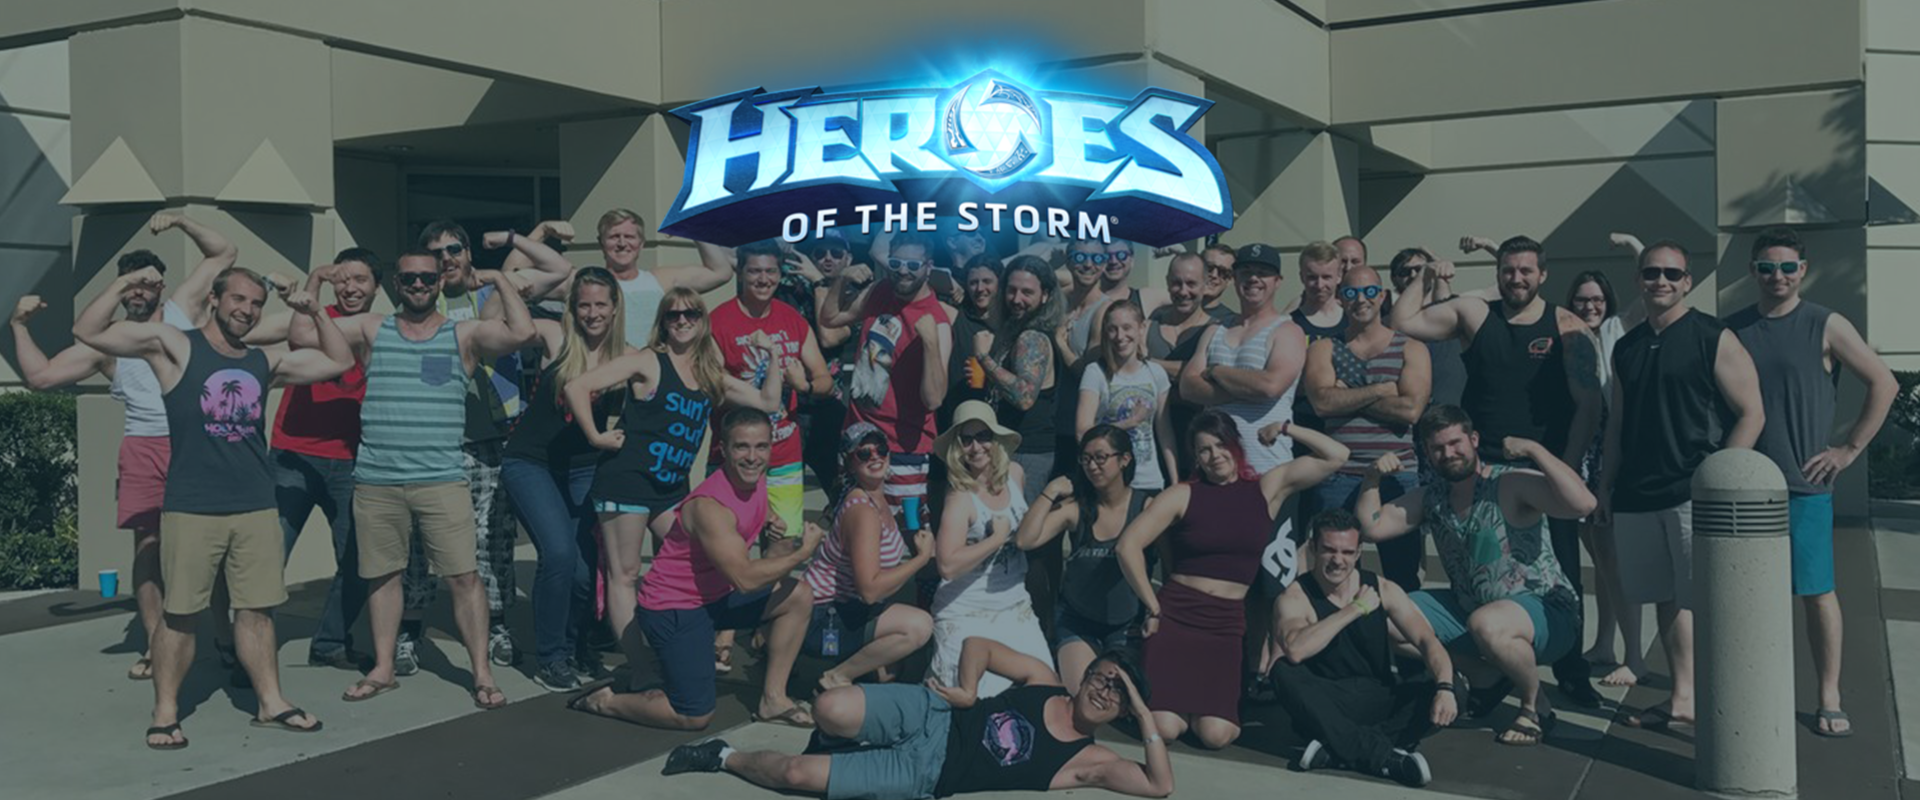 Támogatásról, kedvességről, és nagylelkűségről tett tanúbizonyságot a Blizzard